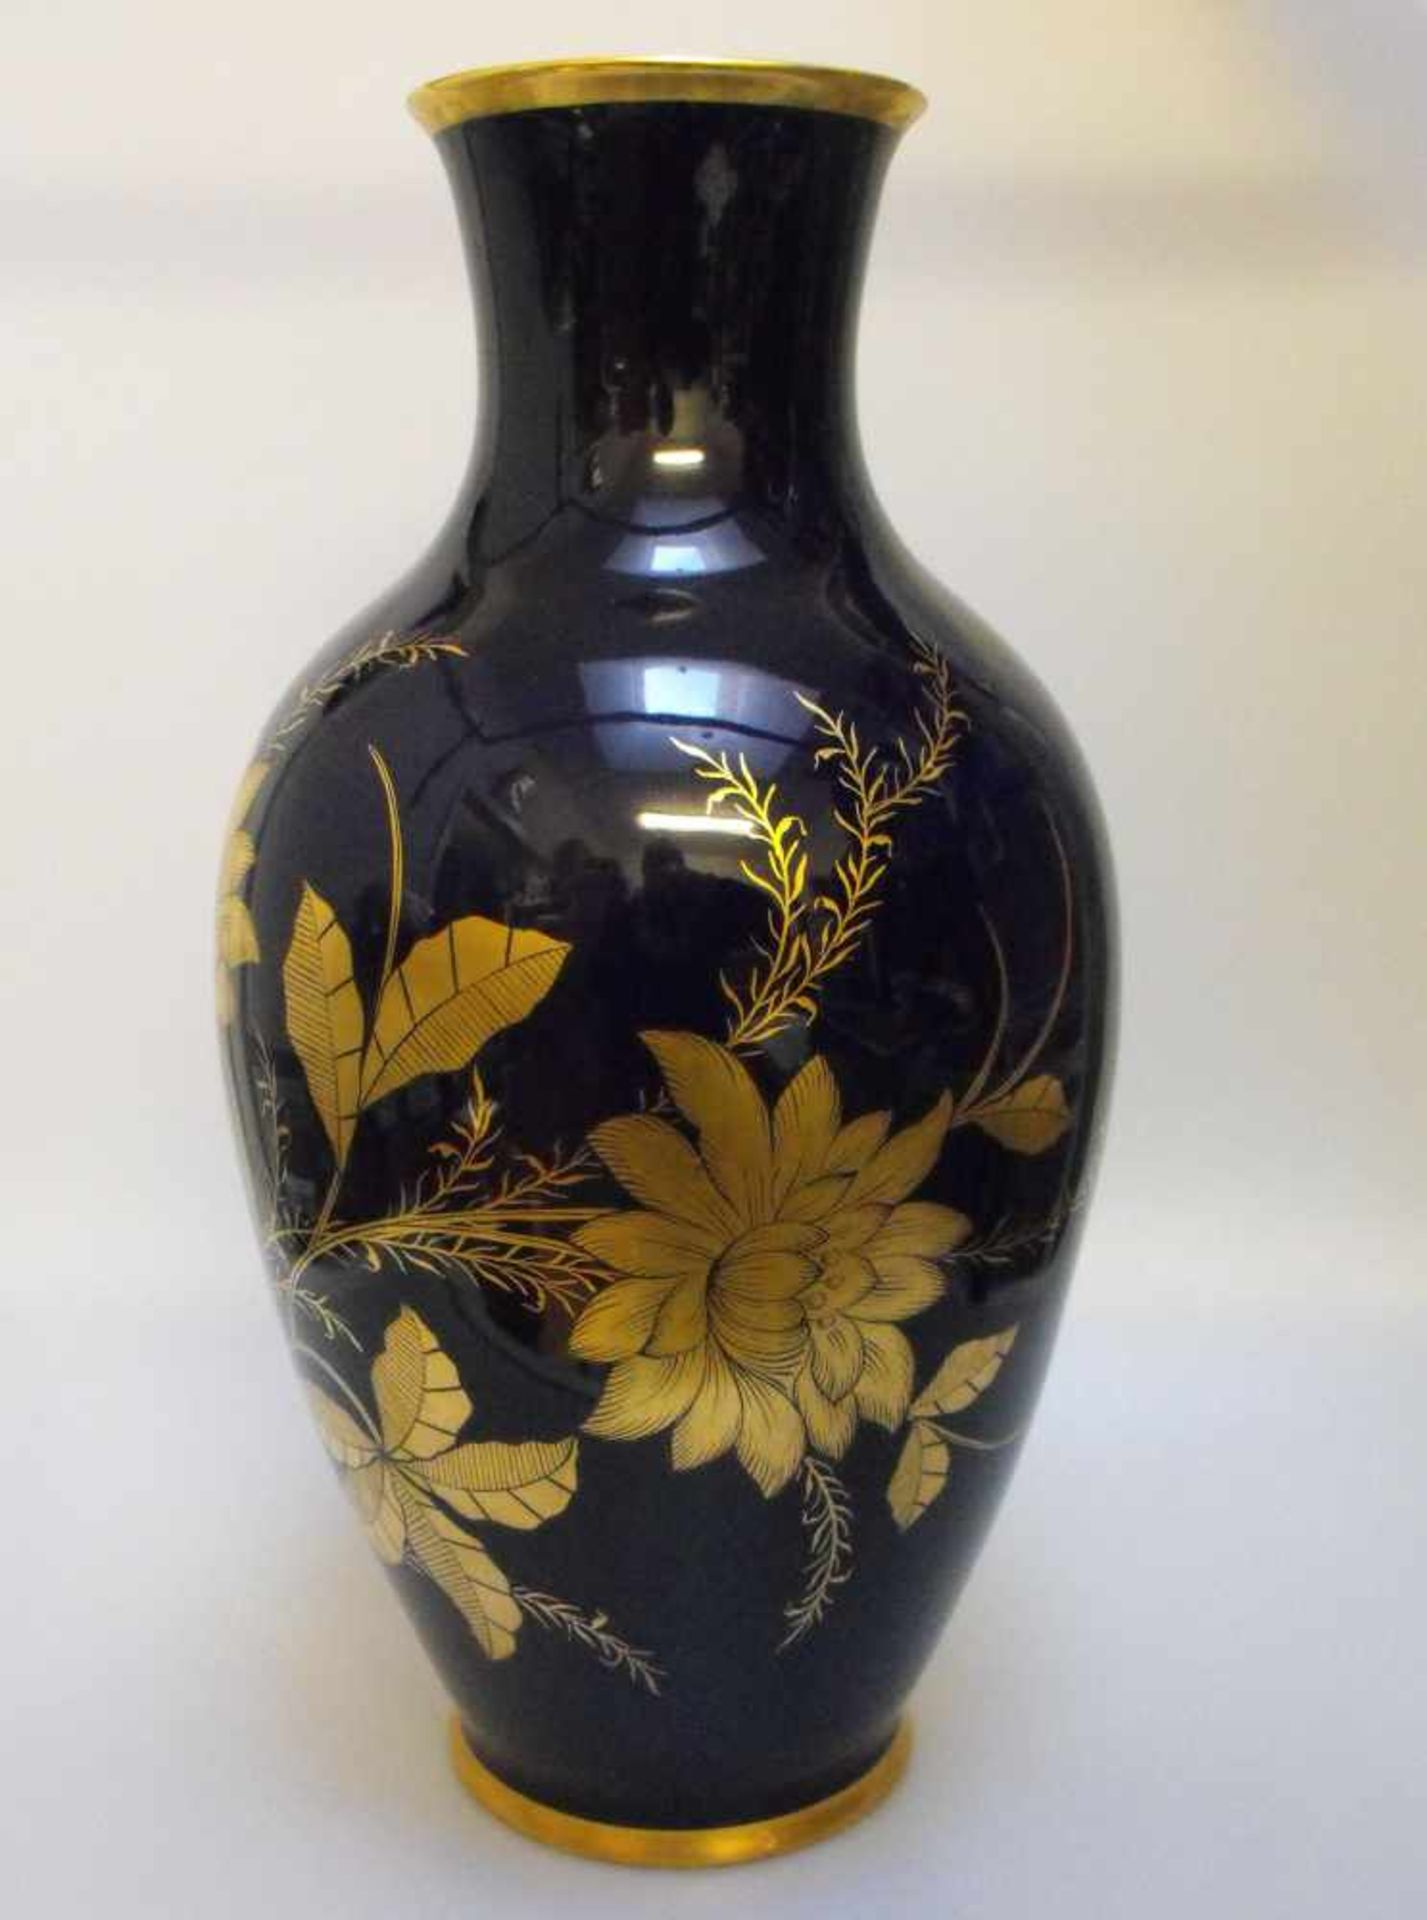 Lindner Bodenvase Vase Kobalt Gold Blau Porzellan Rarität Handarbeit Made in Germany - Bild 2 aus 3